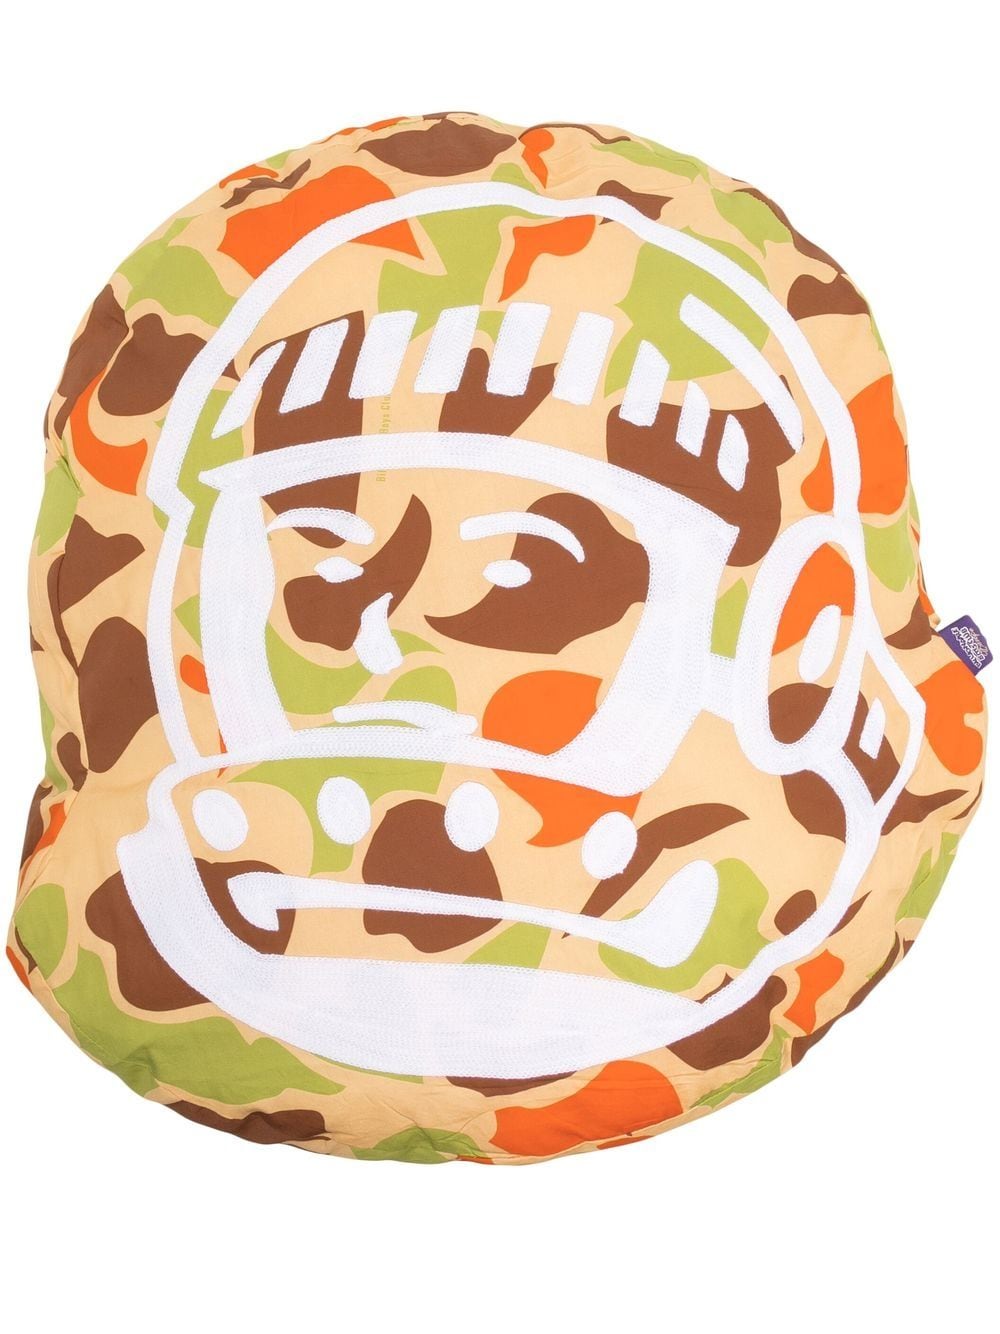 Billionaire Boys Club Astro helmet cushion - Multicolour von Billionaire Boys Club